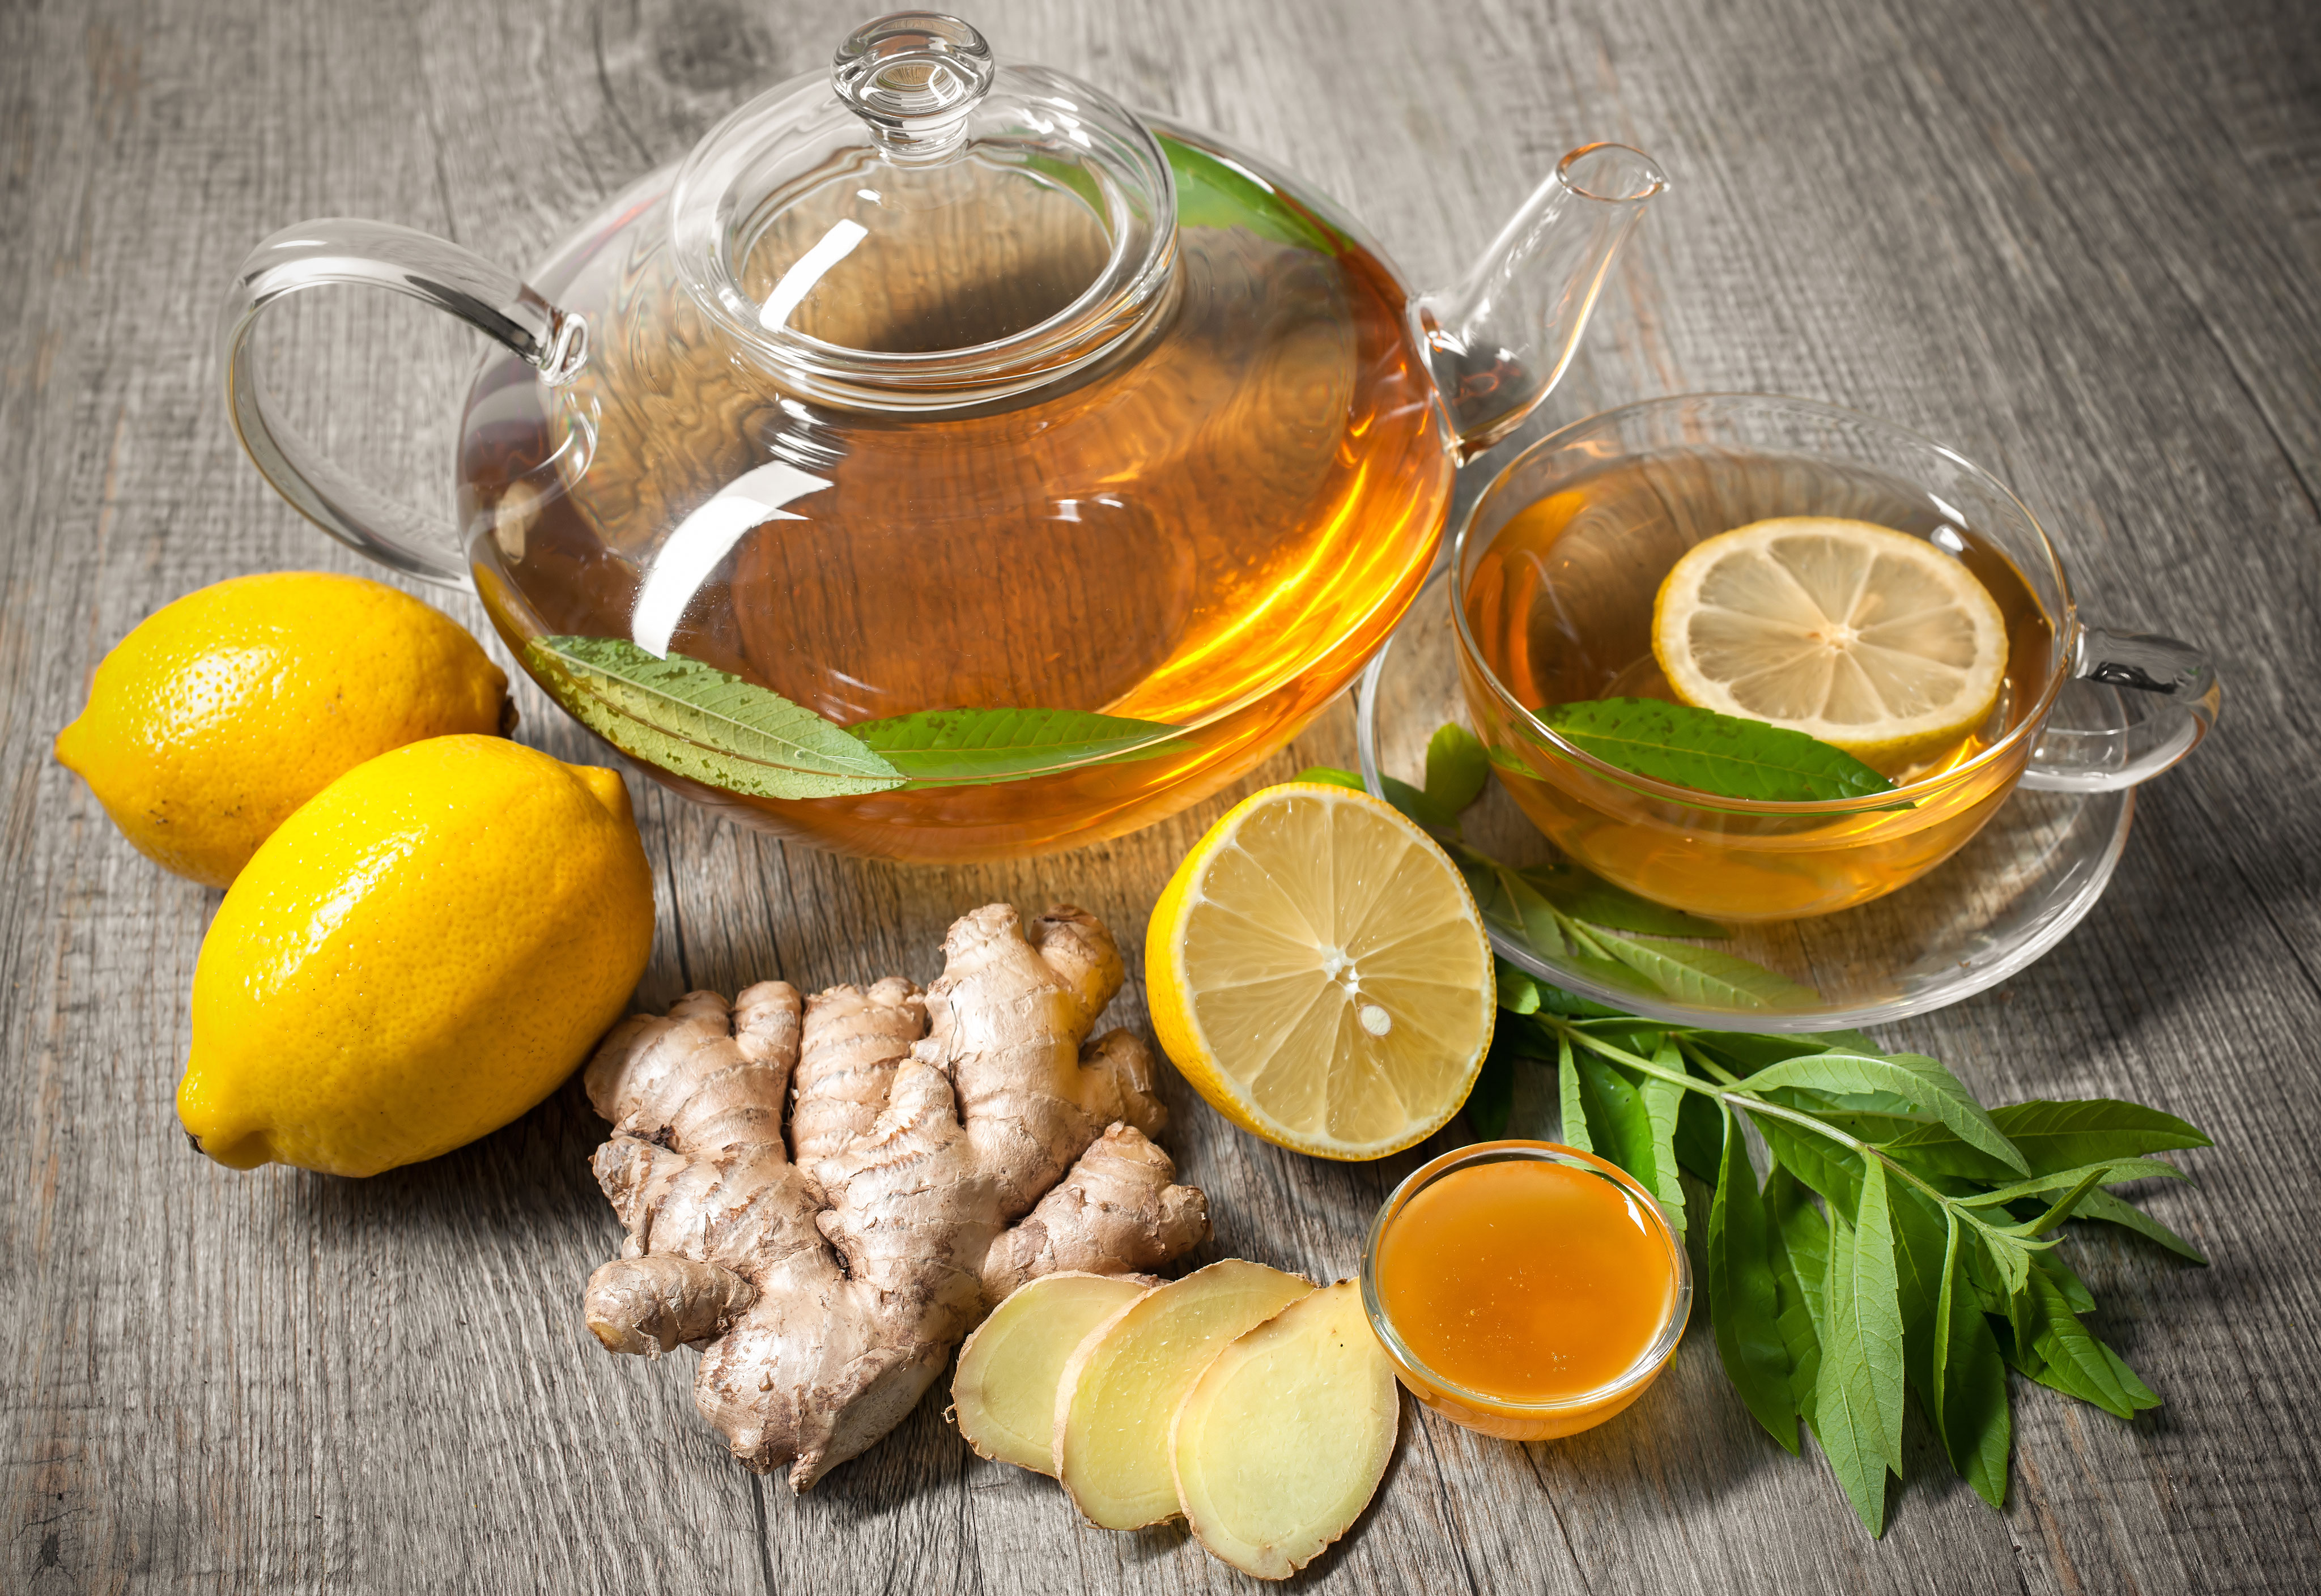 Здоровье природными средствами. Чай имбирь лимон мед зеленый чай. Имбирный чай. Чай с лимоном и медом. Чай с лимоном и имбирем.